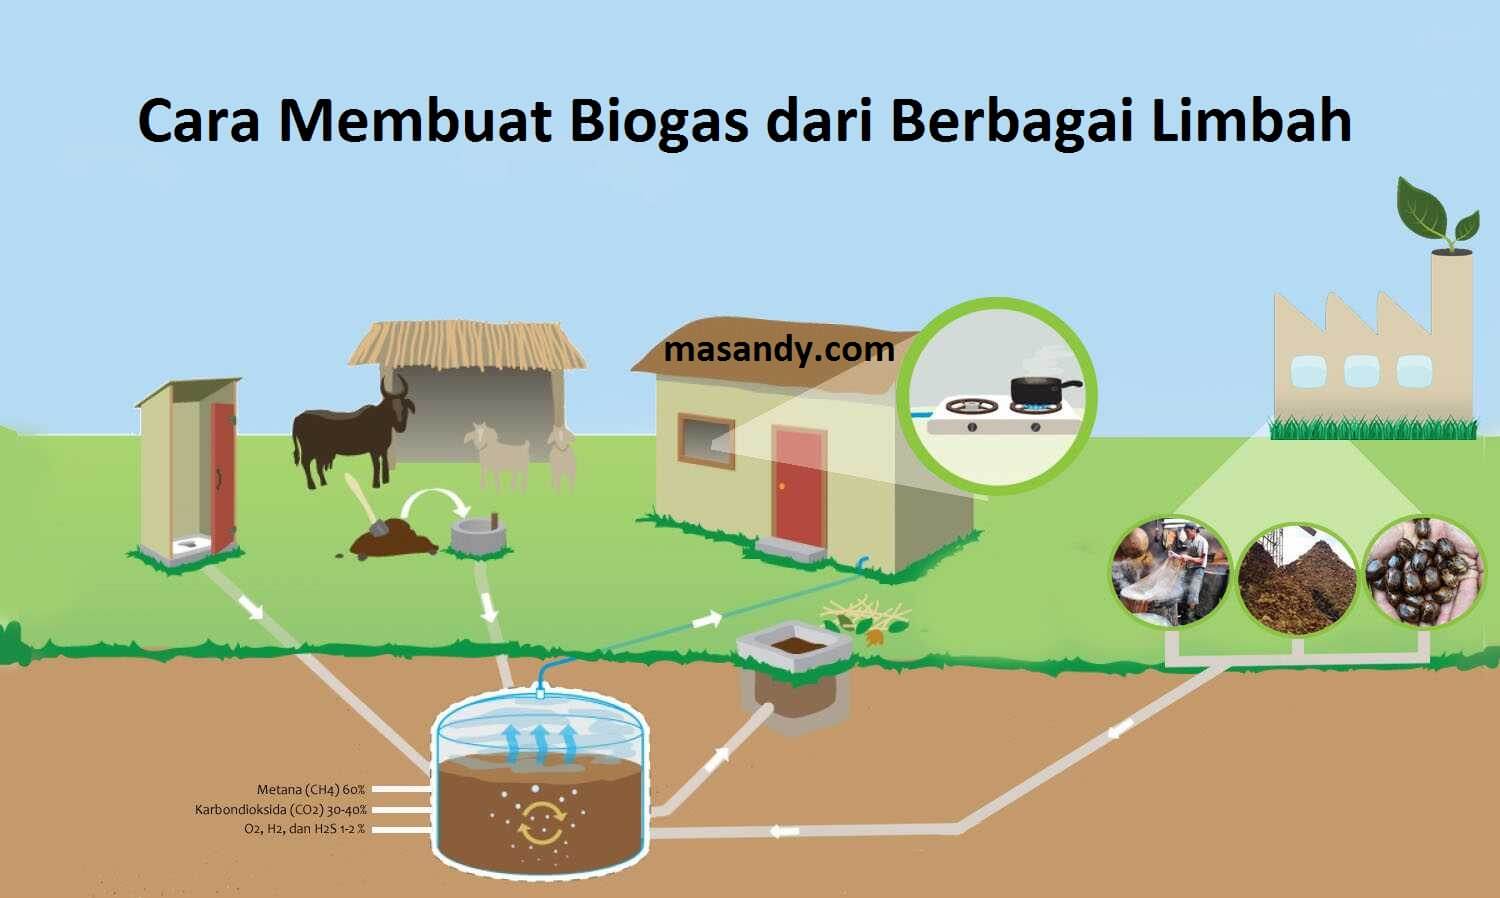 Cara meningkatkan produksi biogas